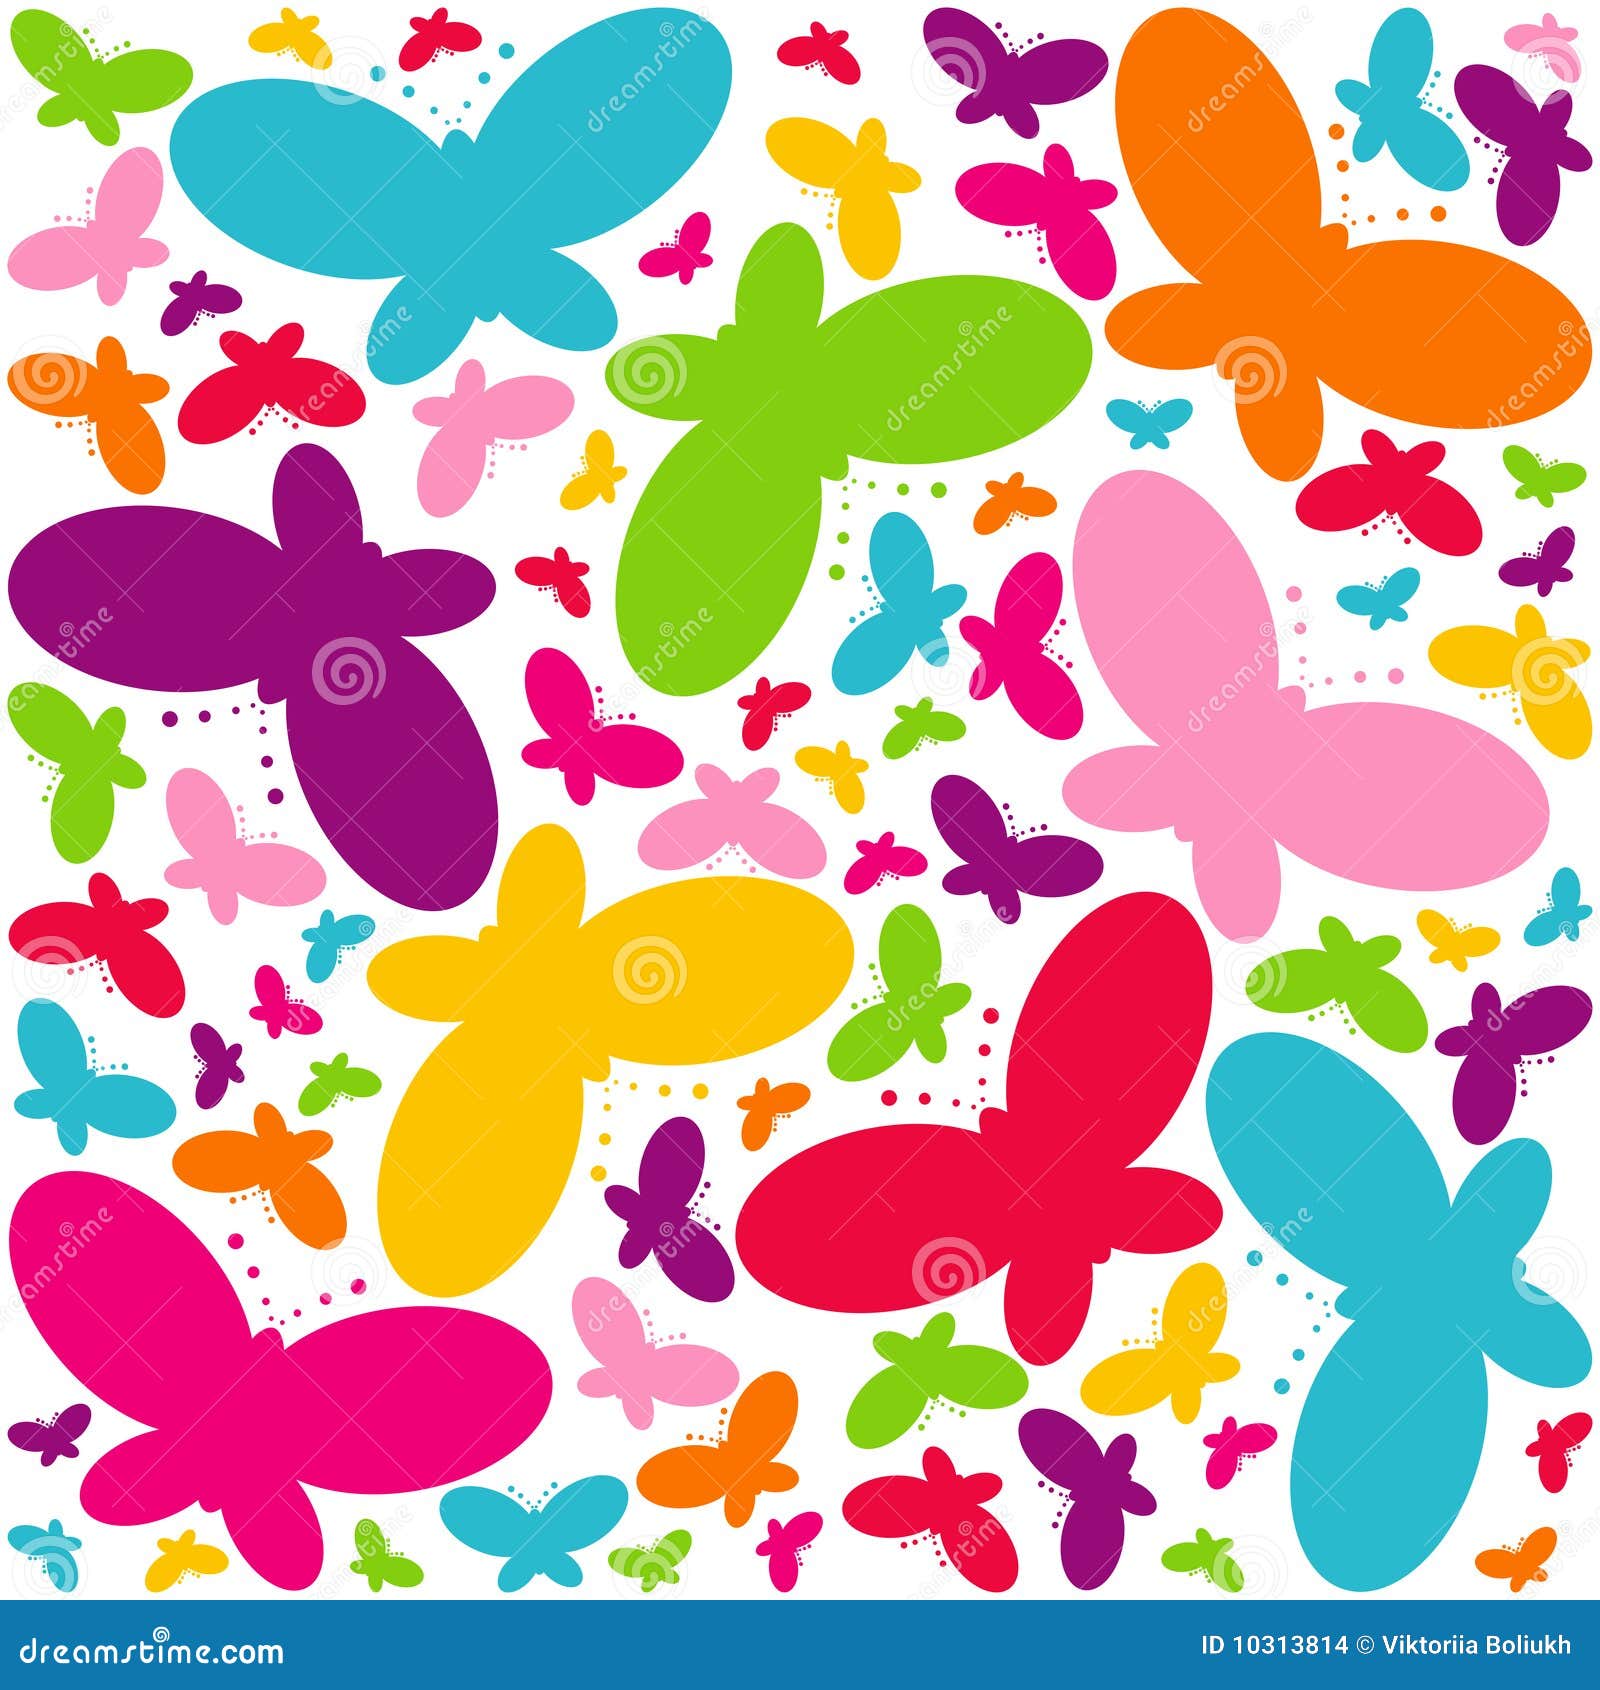 Chaos butterflies stock illustration. Illustration of beauty - 10313814